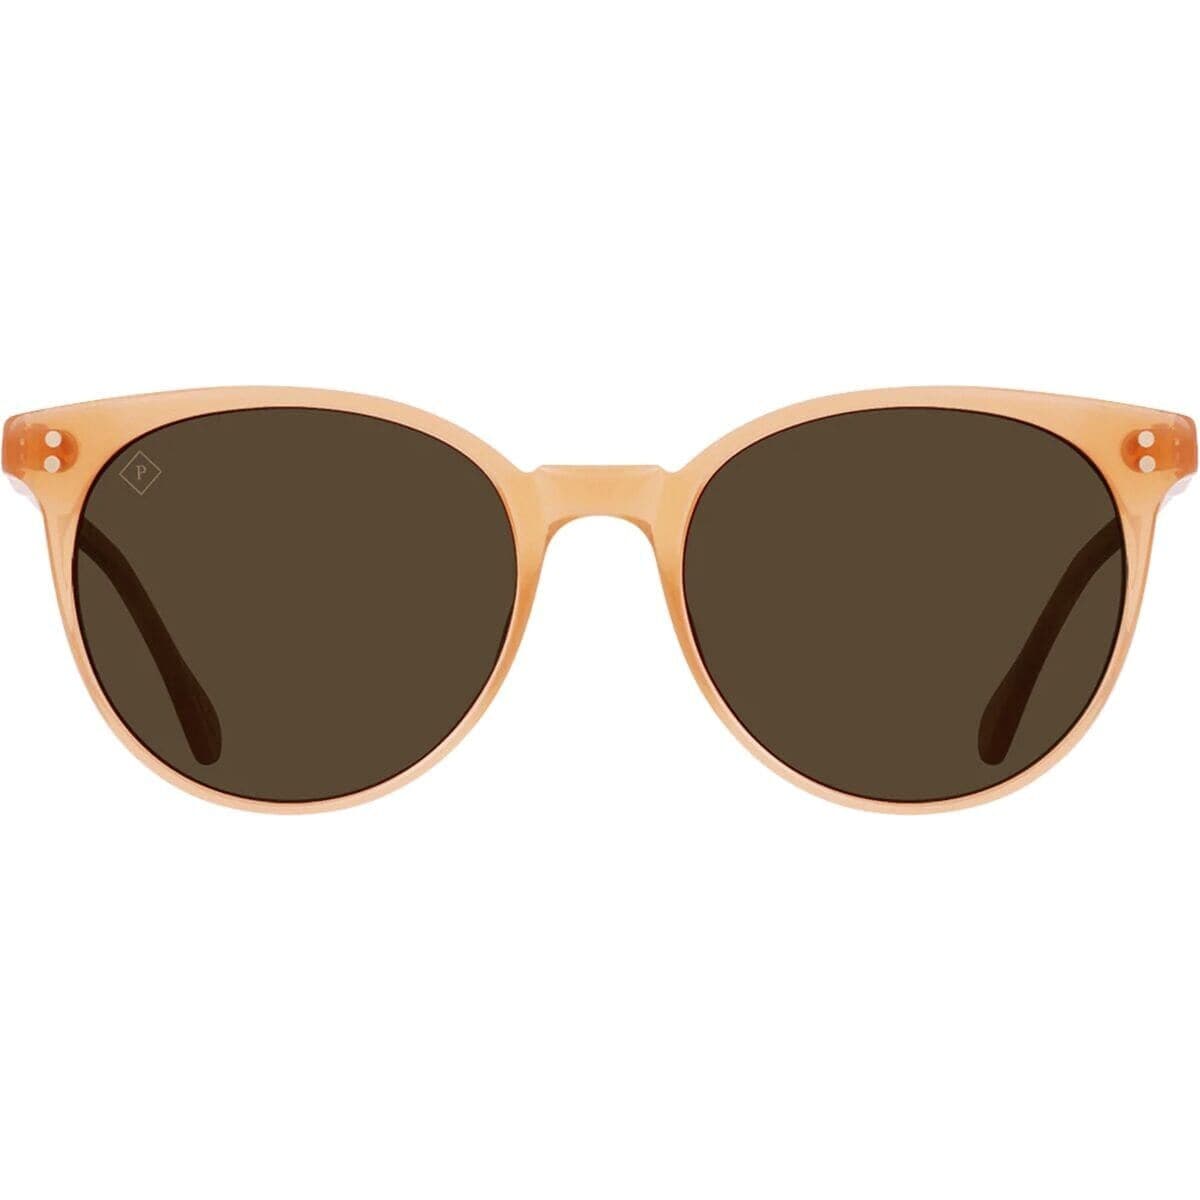 (取寄) レーン オプティクス ノリエ ポーラライズド サングラス RAEN optics Norie Polarized Sunglasses Papaya Vibrant Brown Polarized